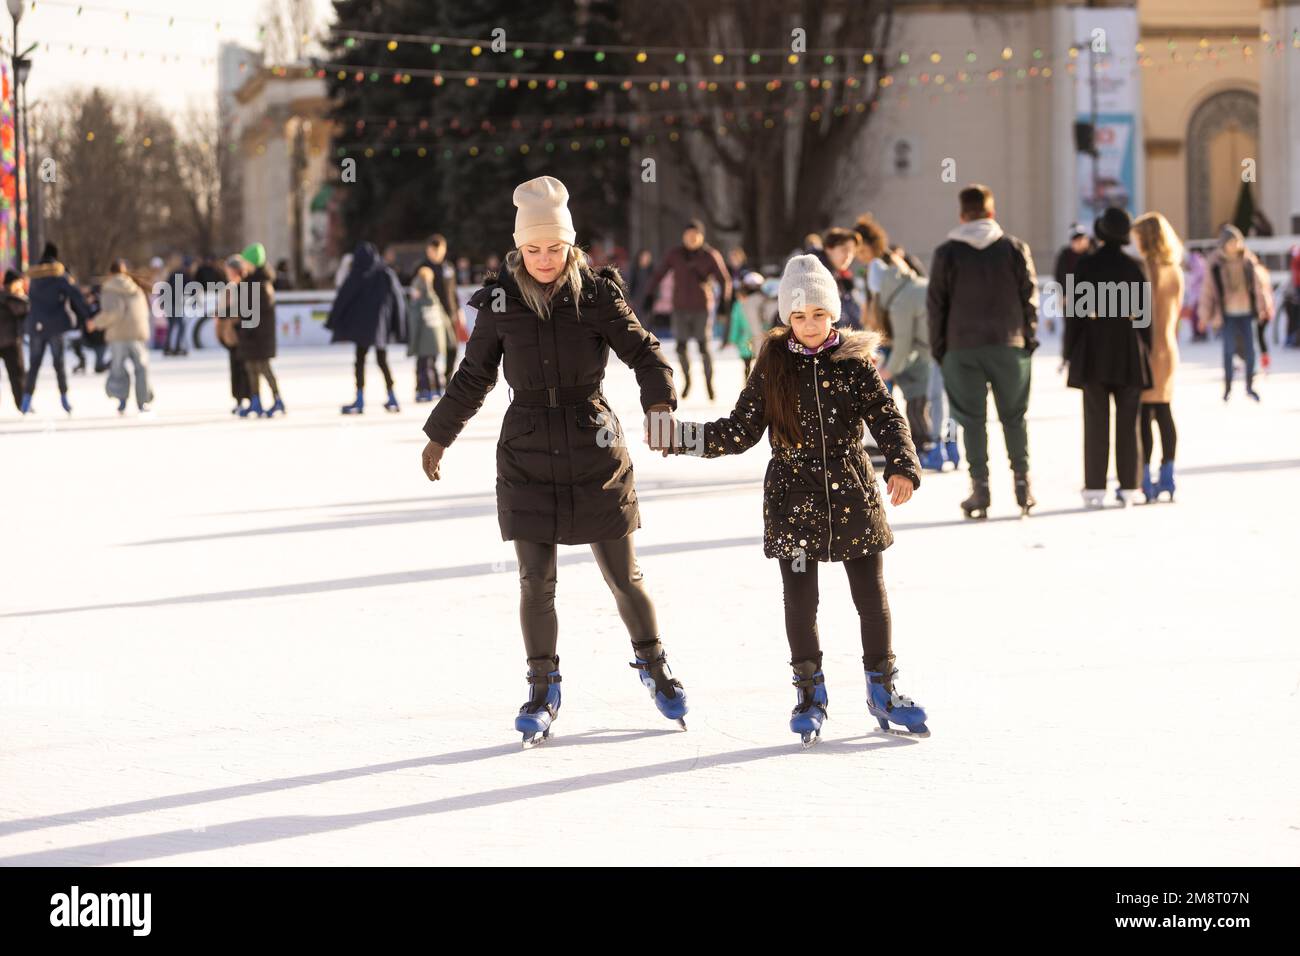 Photo d'action d'une belle femme enseignant à sa fille comment skate sur glace Banque D'Images